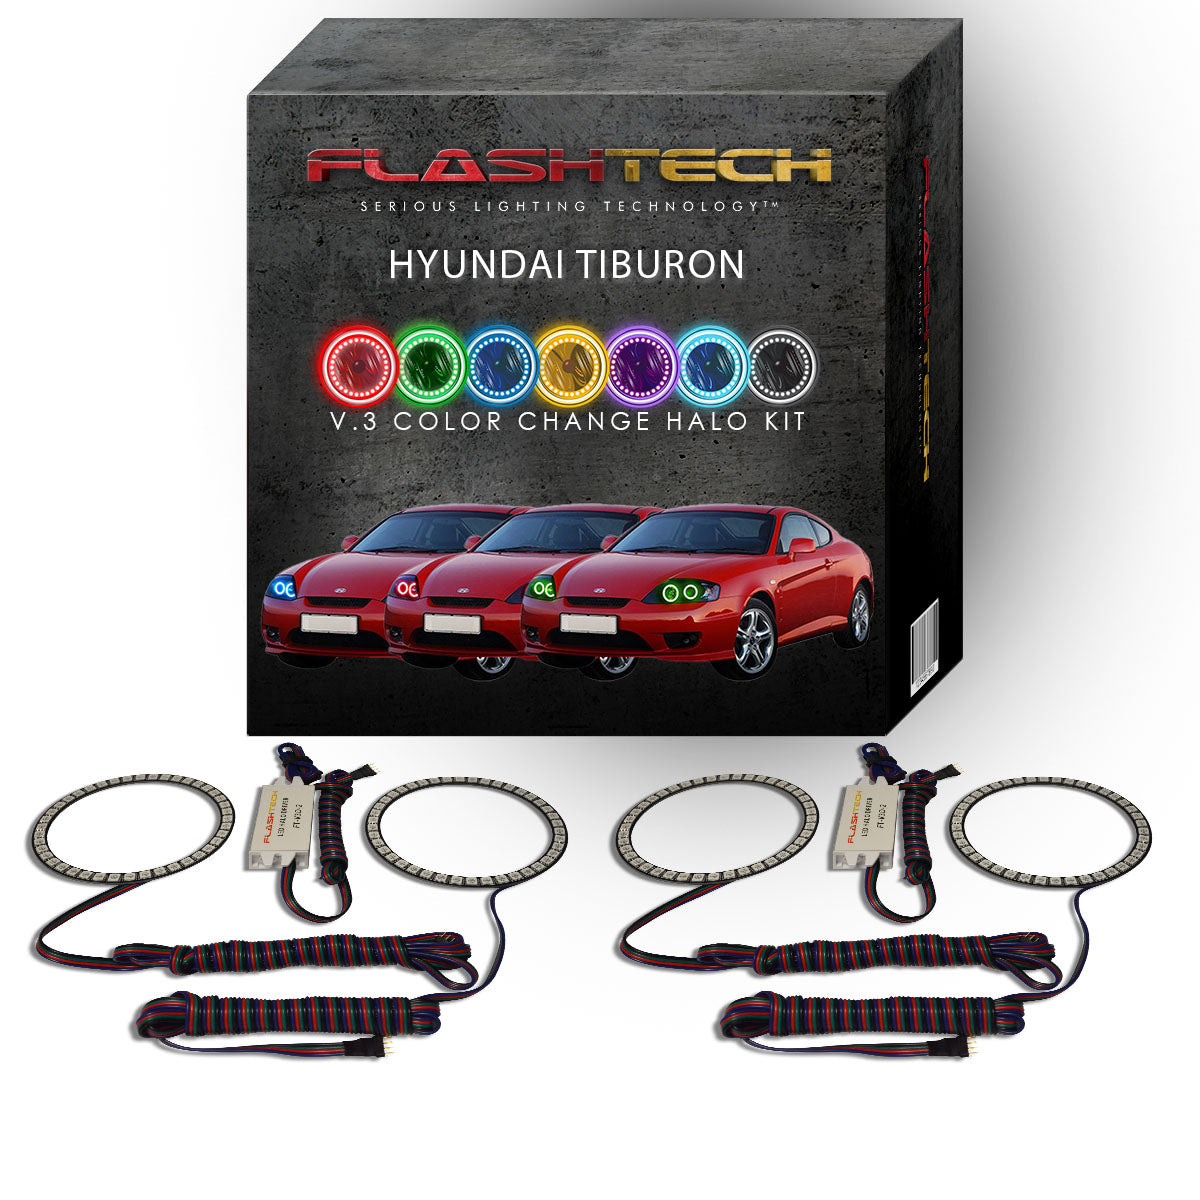 Hyundai-Tiburon-2005, 2006-LED-Halo-Headlights-RGB-No Remote-HY-TB0506-V3H